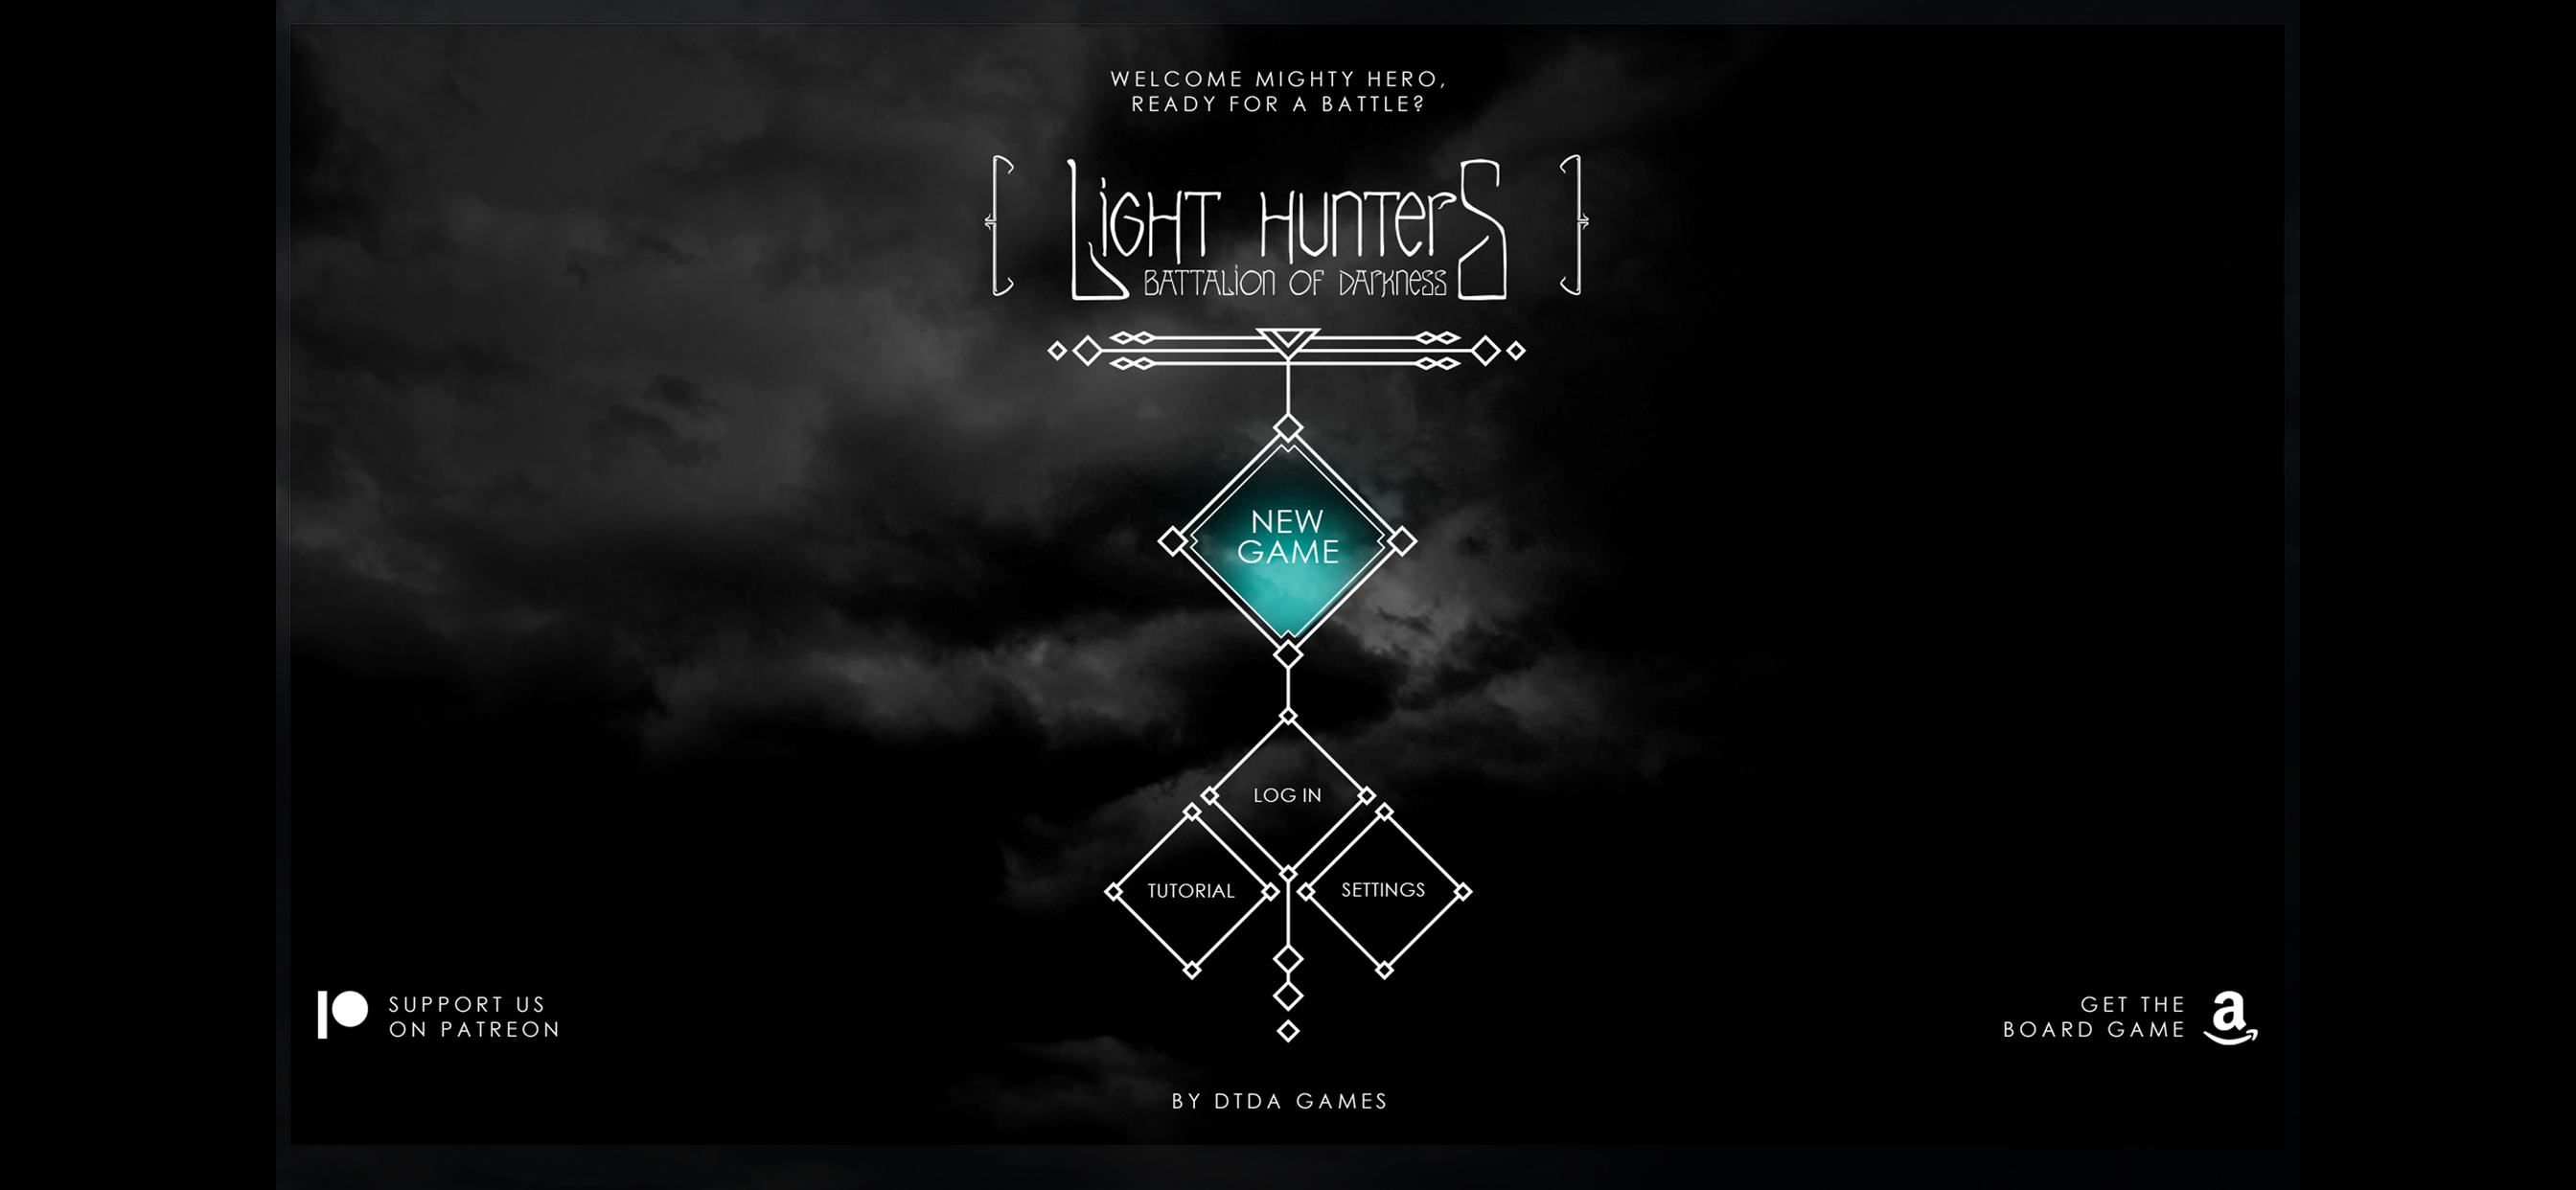 Light Hunters